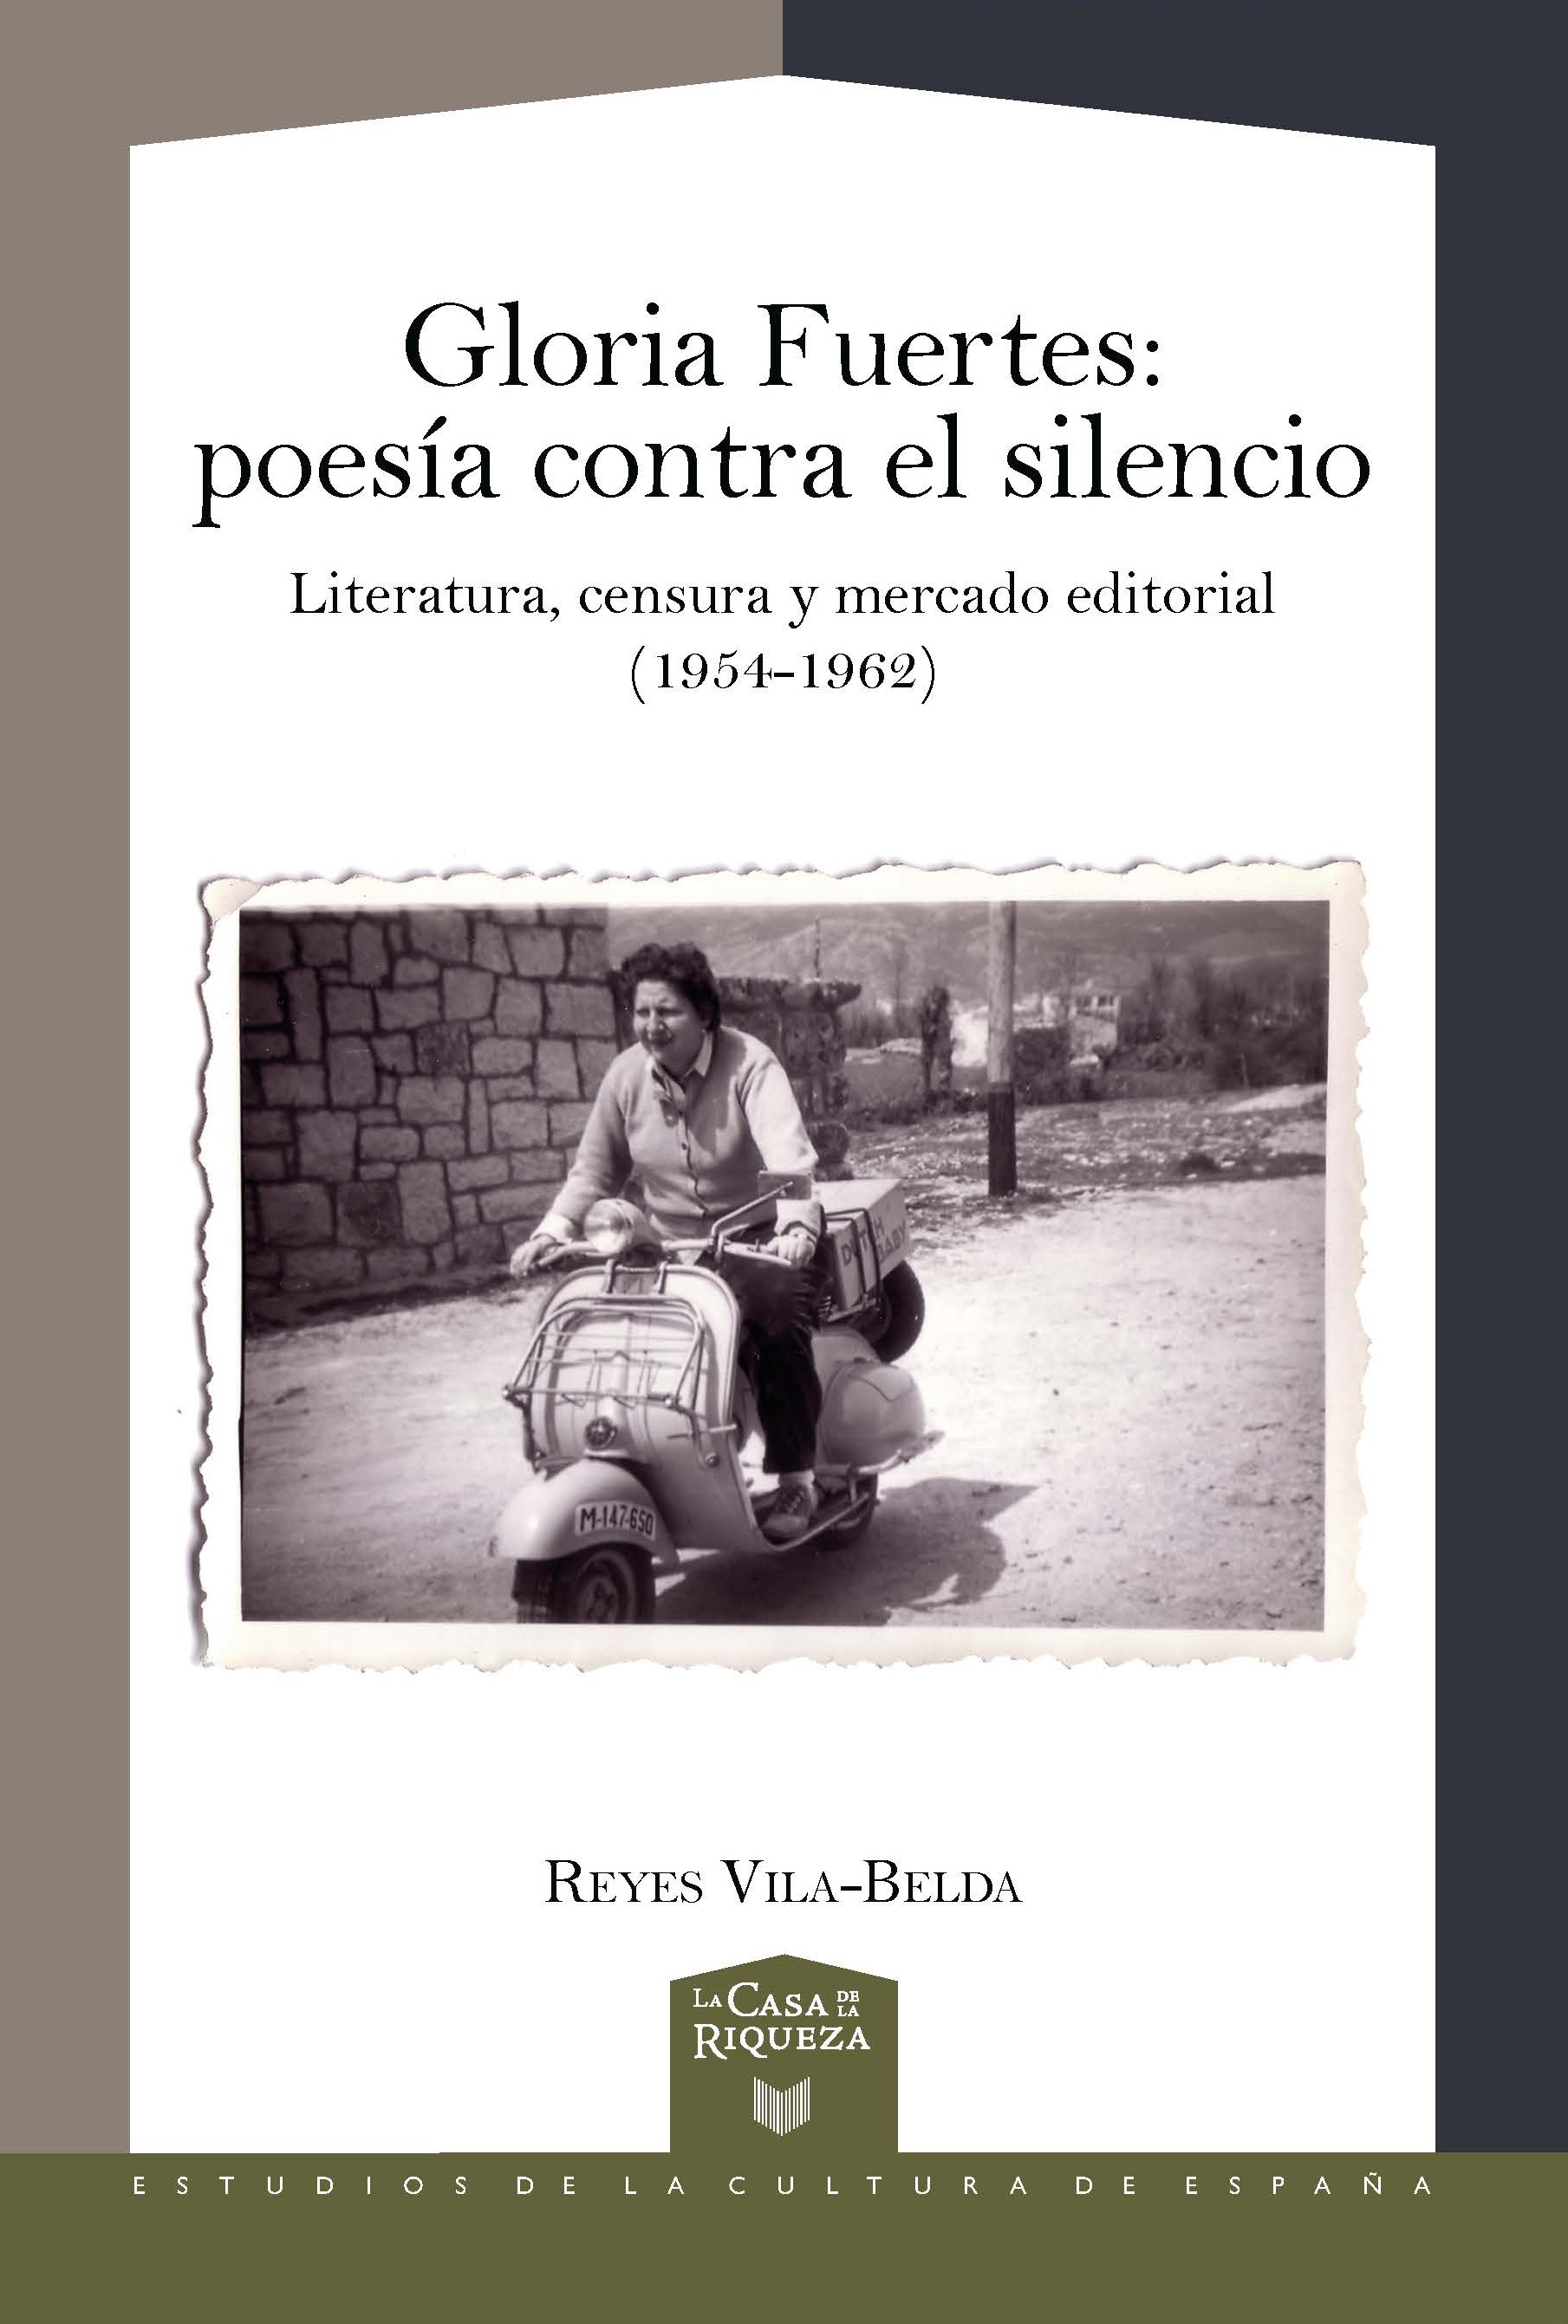 Gloria Fuertes: poesía contra el silencio